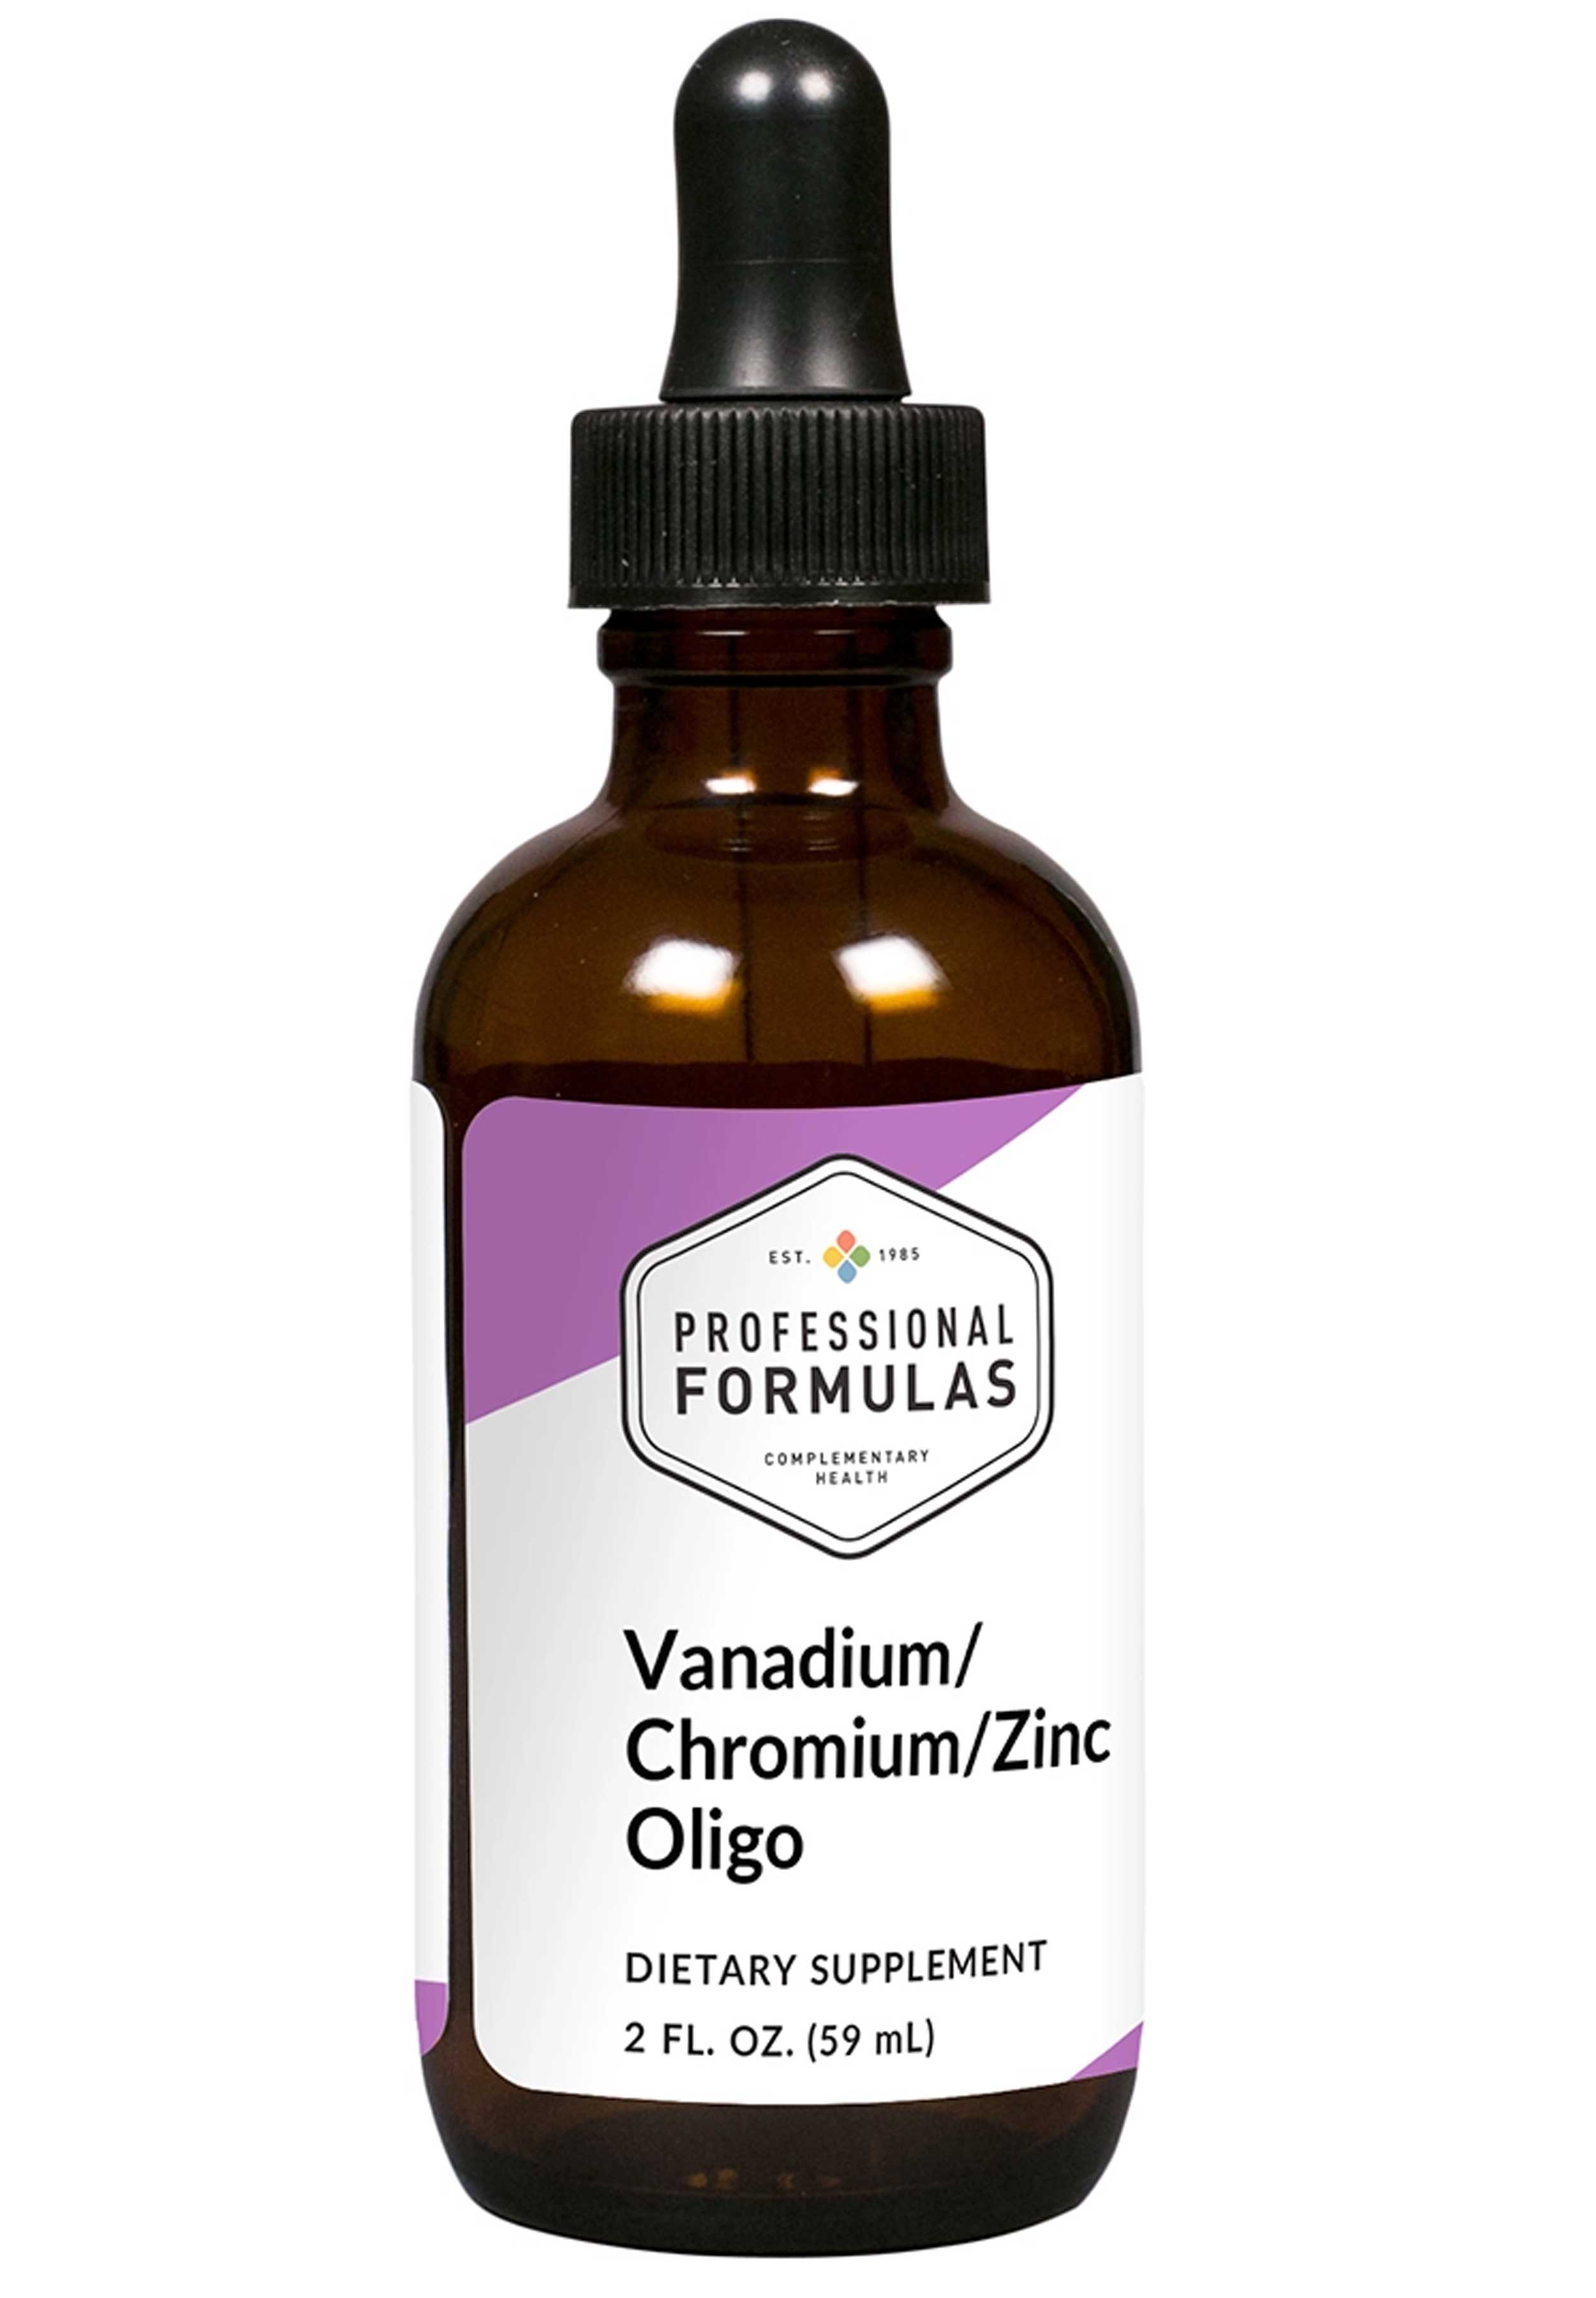 Professional Formulas Vanadium/Chromium/Zinc Oligo